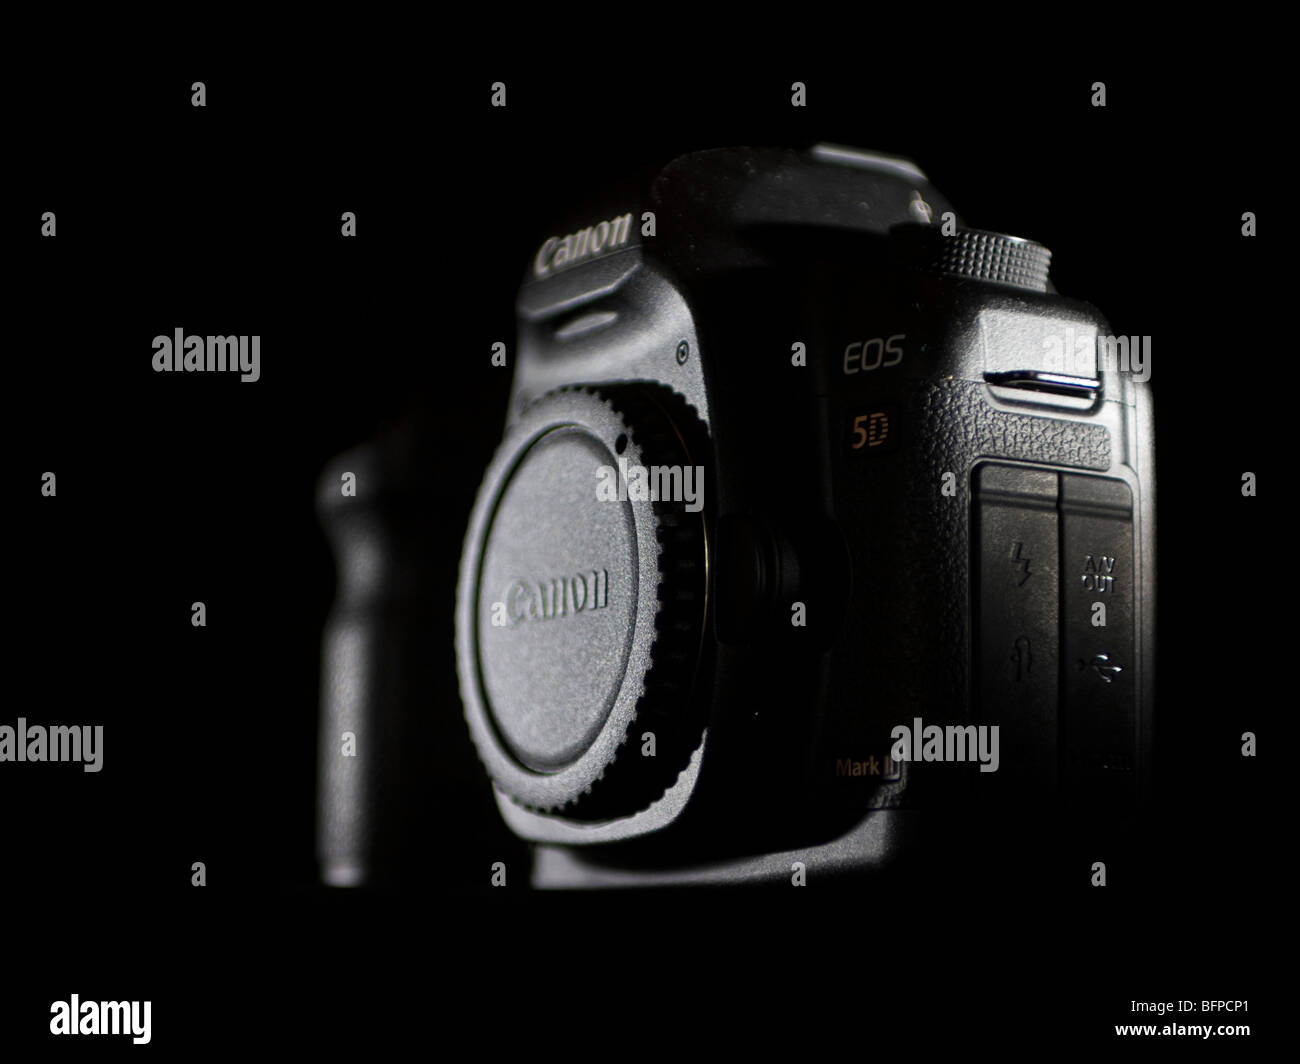 DSLR Canon 5D Mark II against black background Stock Photo